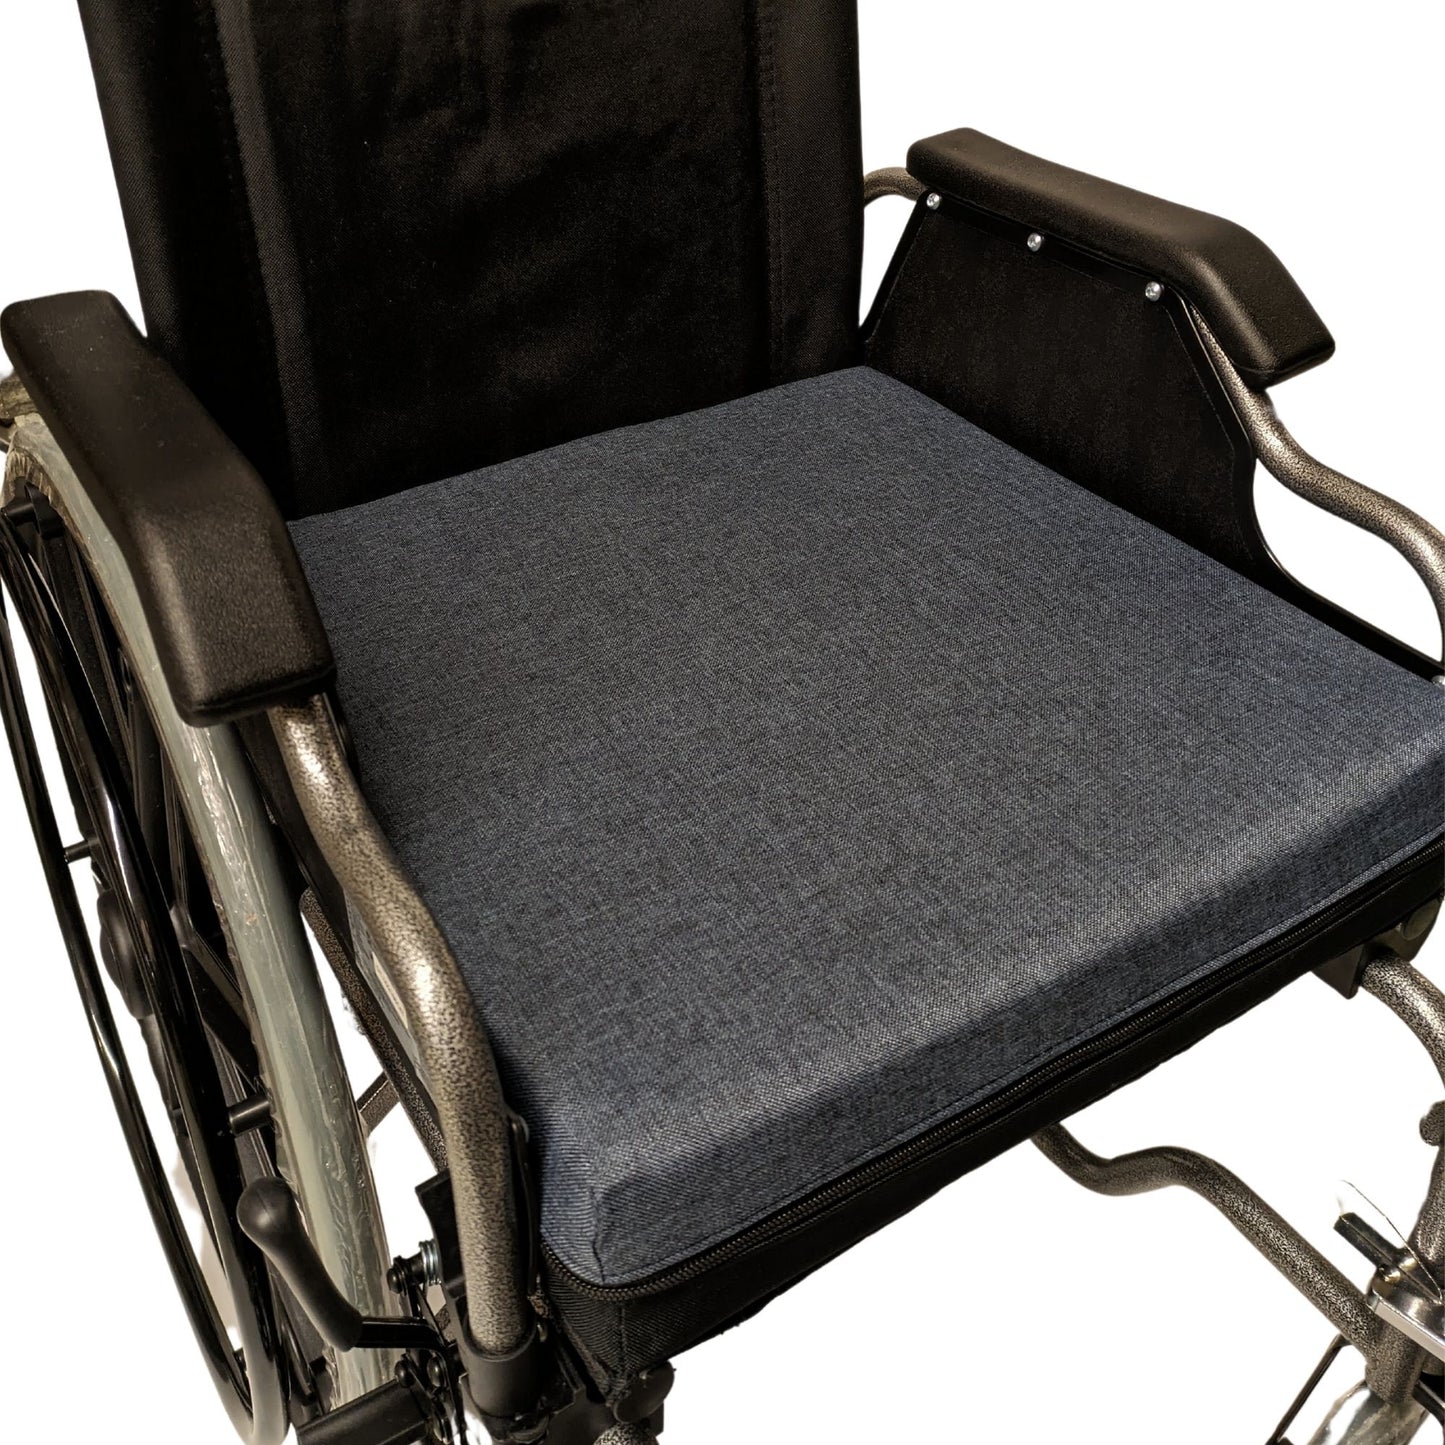 SENIORI Rollstuhlkissen Sitzkissen für Rollstuhl Sitzerhöhungv 42 x 42 x 8 cm Antidekubitus Kissen mit doppelter Schaumstoffschicht (5K. Blau)